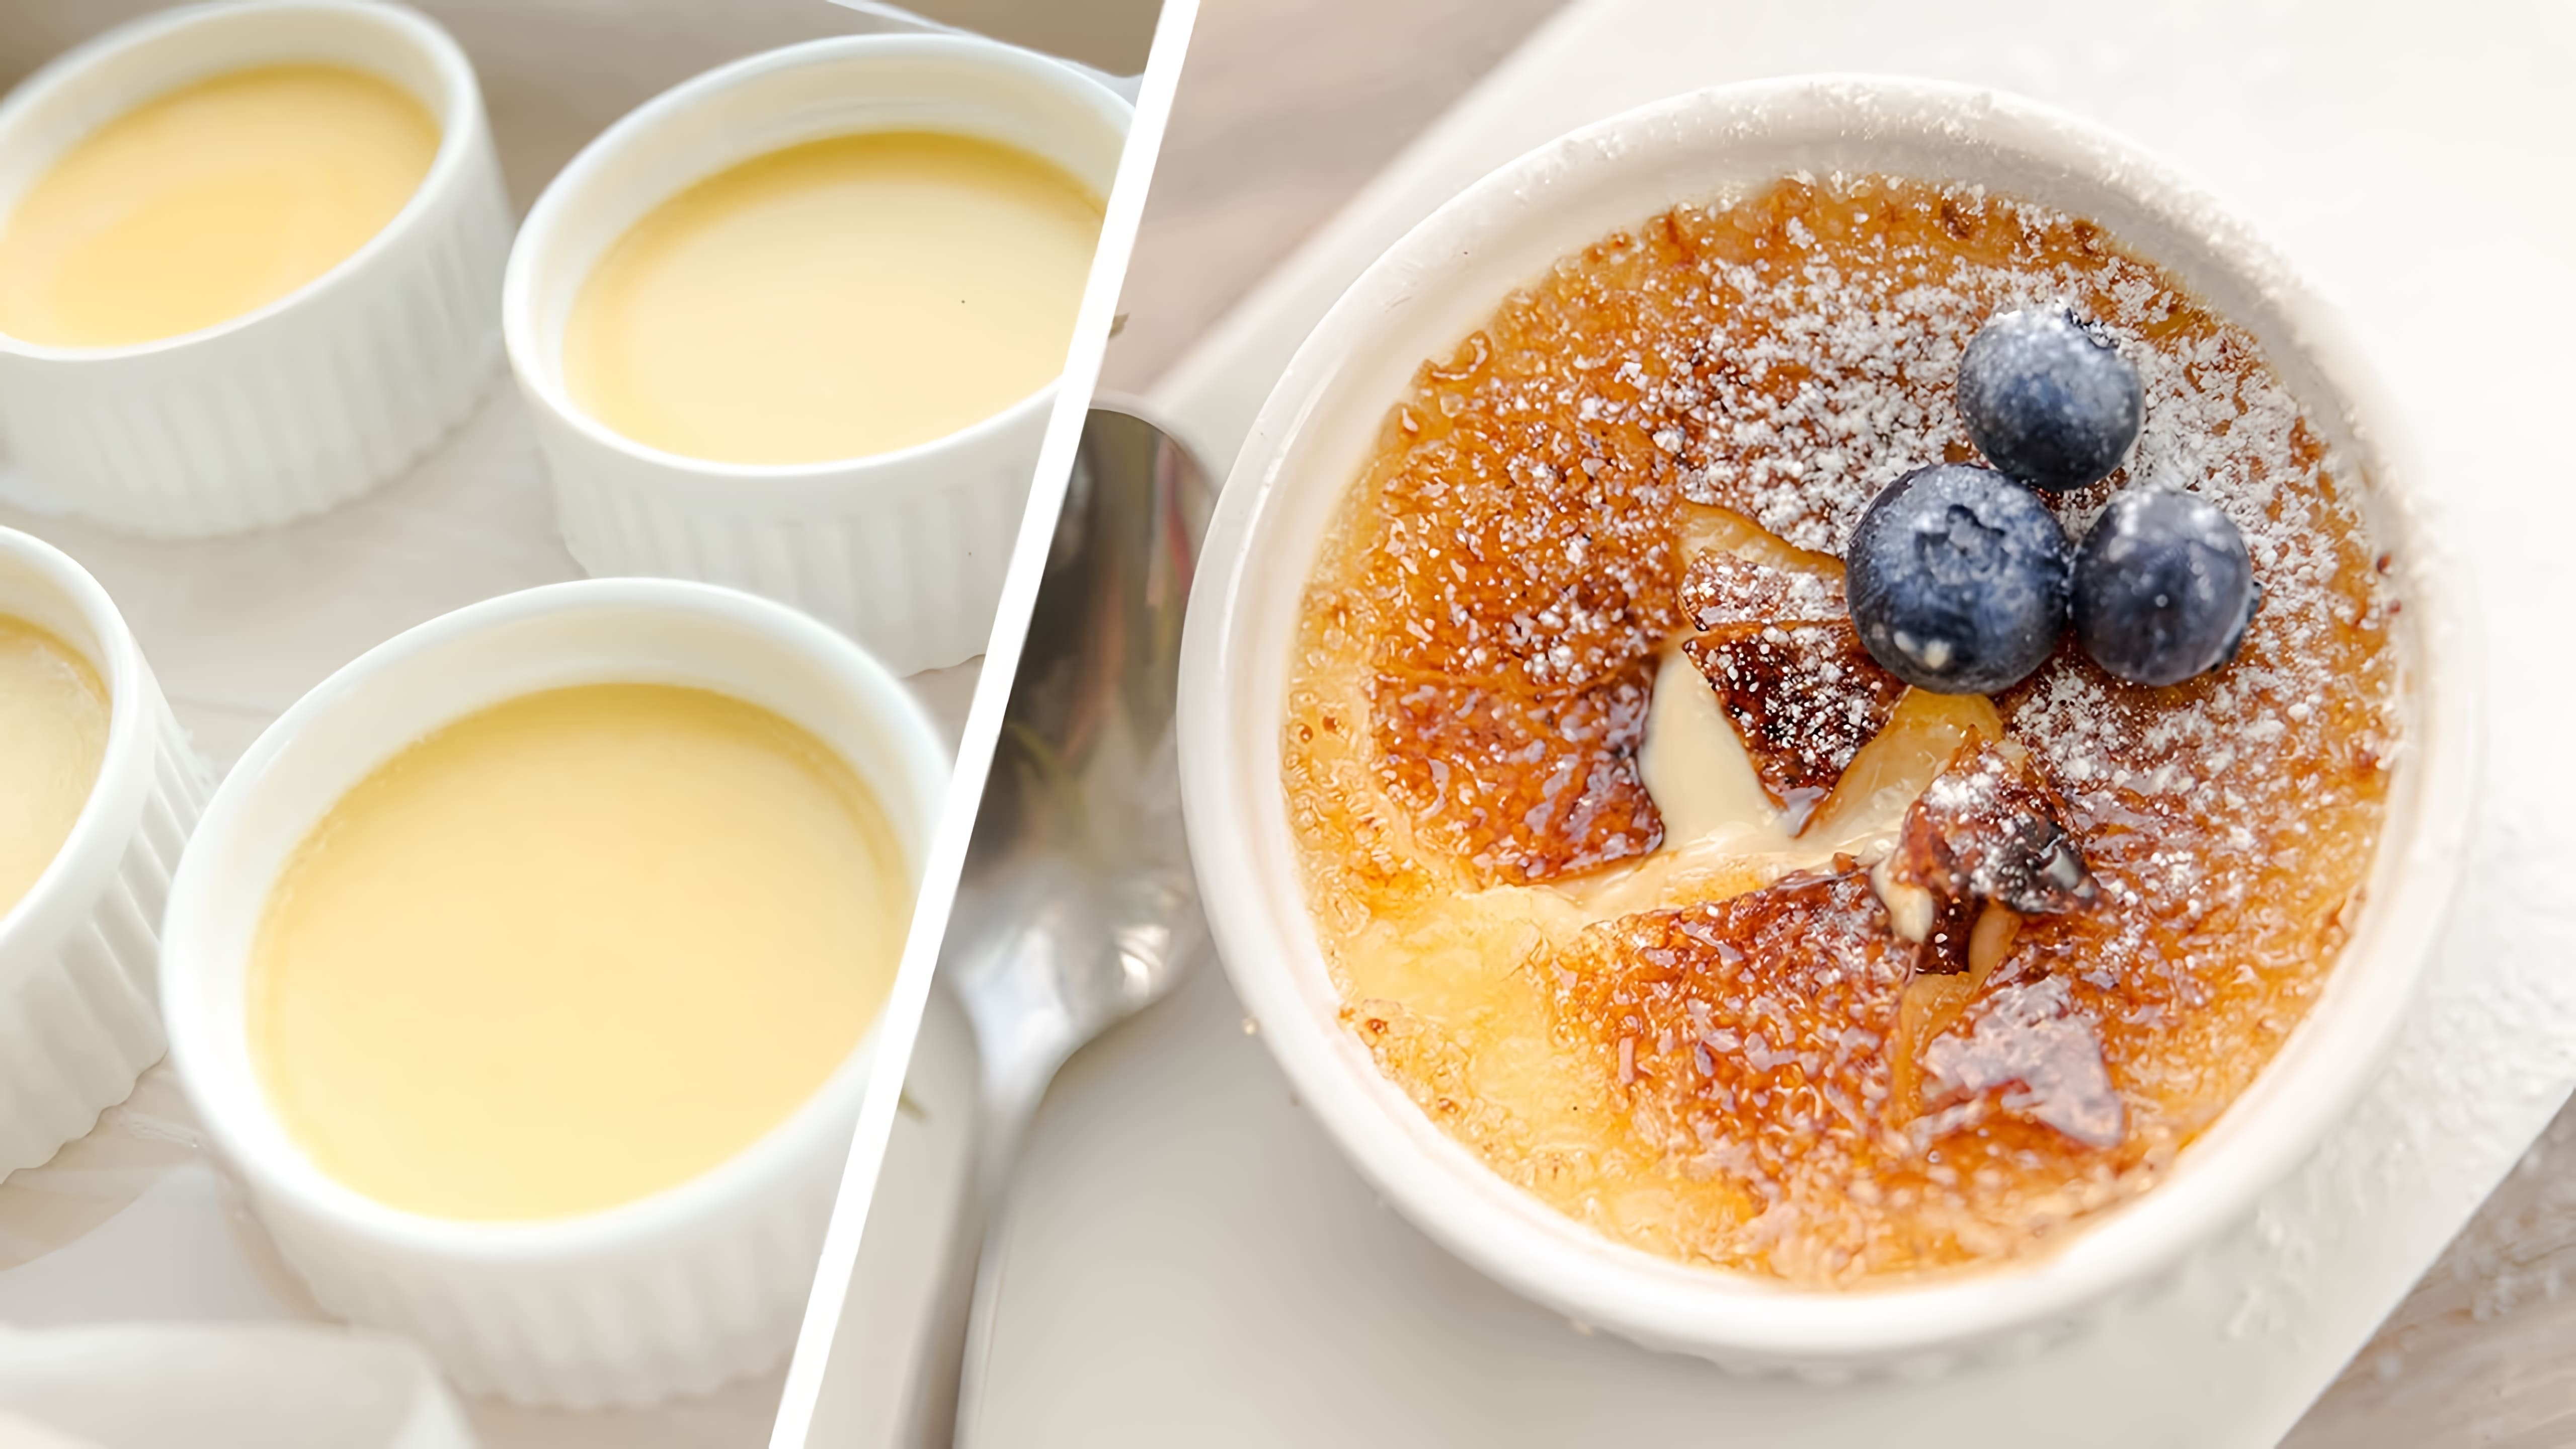 В этом видео демонстрируется процесс приготовления крем-брюле - французского десерта из ванильного крема и хрустящей карамельной корочки